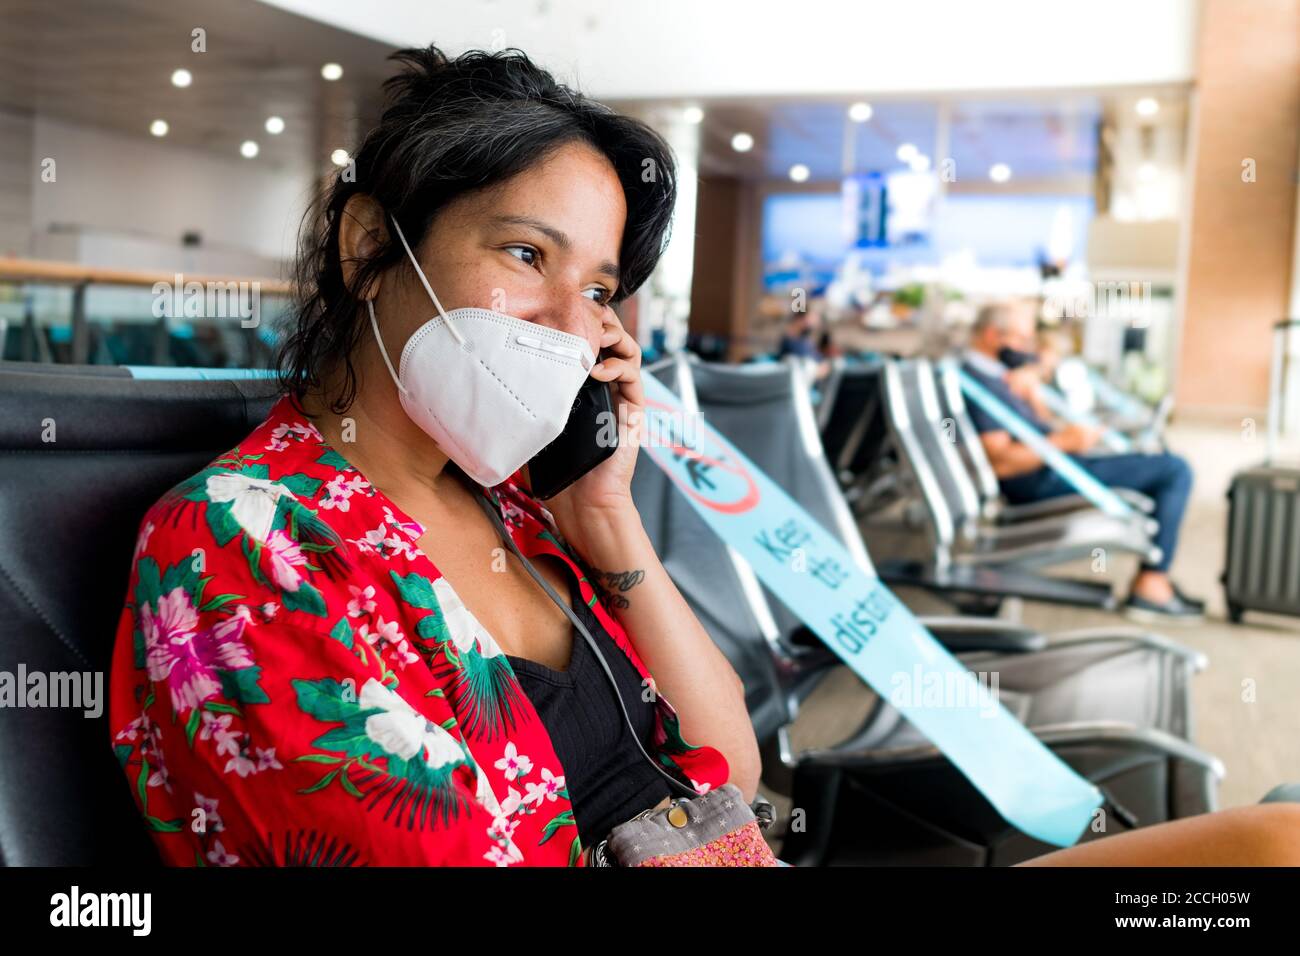 Barcelona, España - 20 de agosto de 2020: Una joven se sienta dentro del aeropuerto con máscara, hablando por teléfono, durante un pande global coronavirus Foto de stock